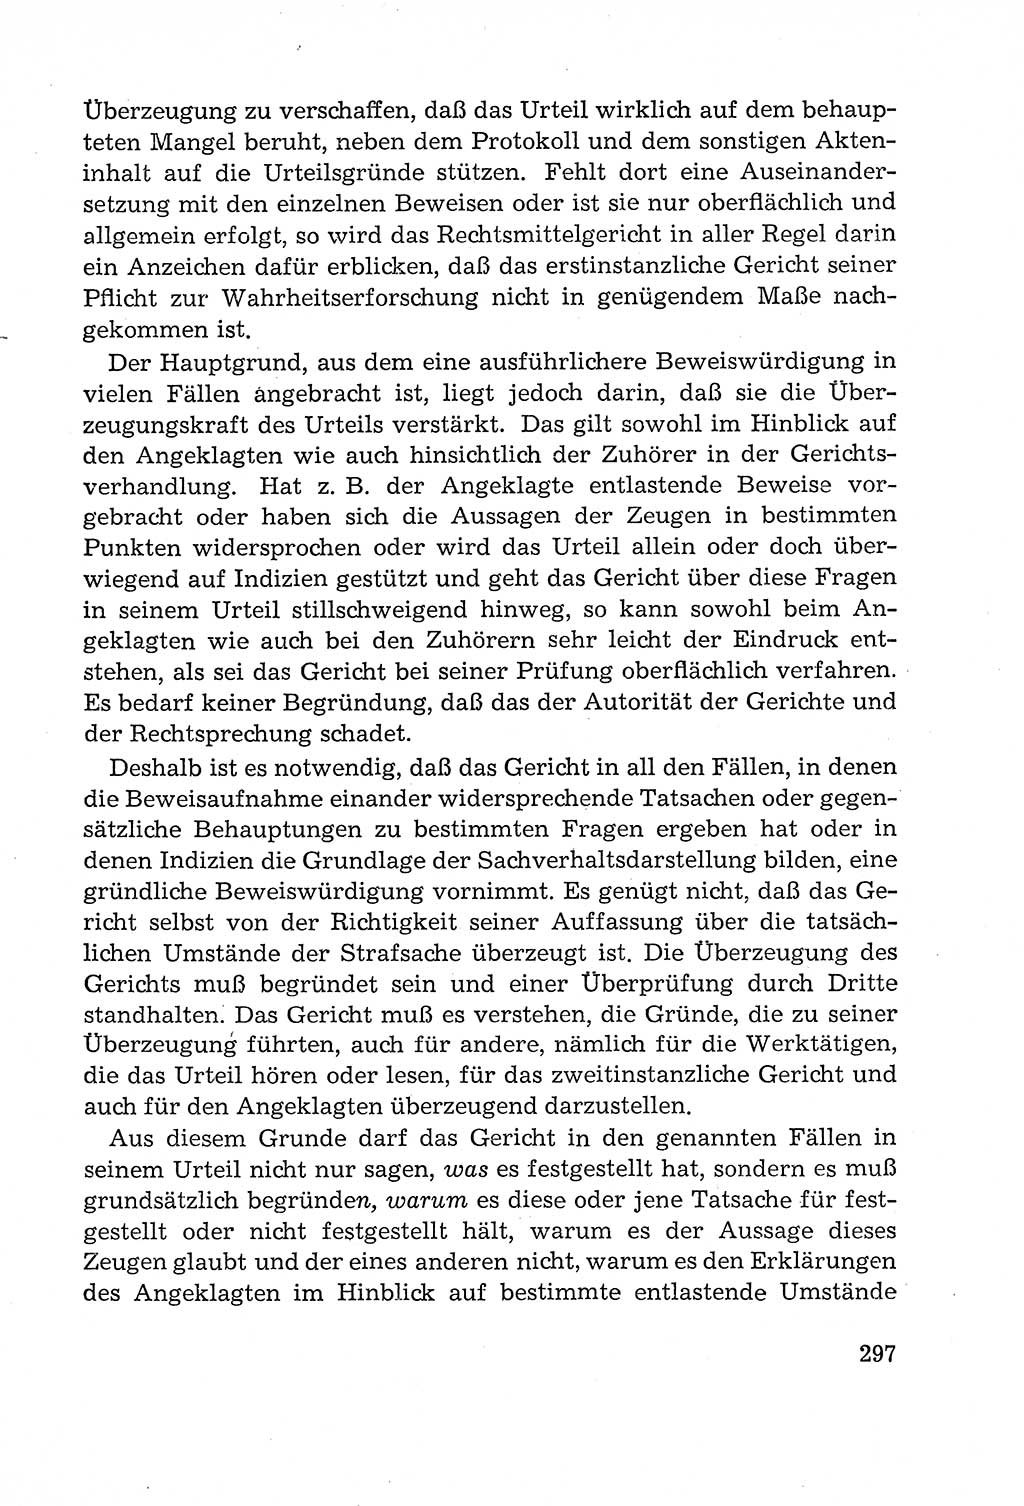 Leitfaden des Strafprozeßrechts der Deutschen Demokratischen Republik (DDR) 1959, Seite 297 (LF StPR DDR 1959, S. 297)